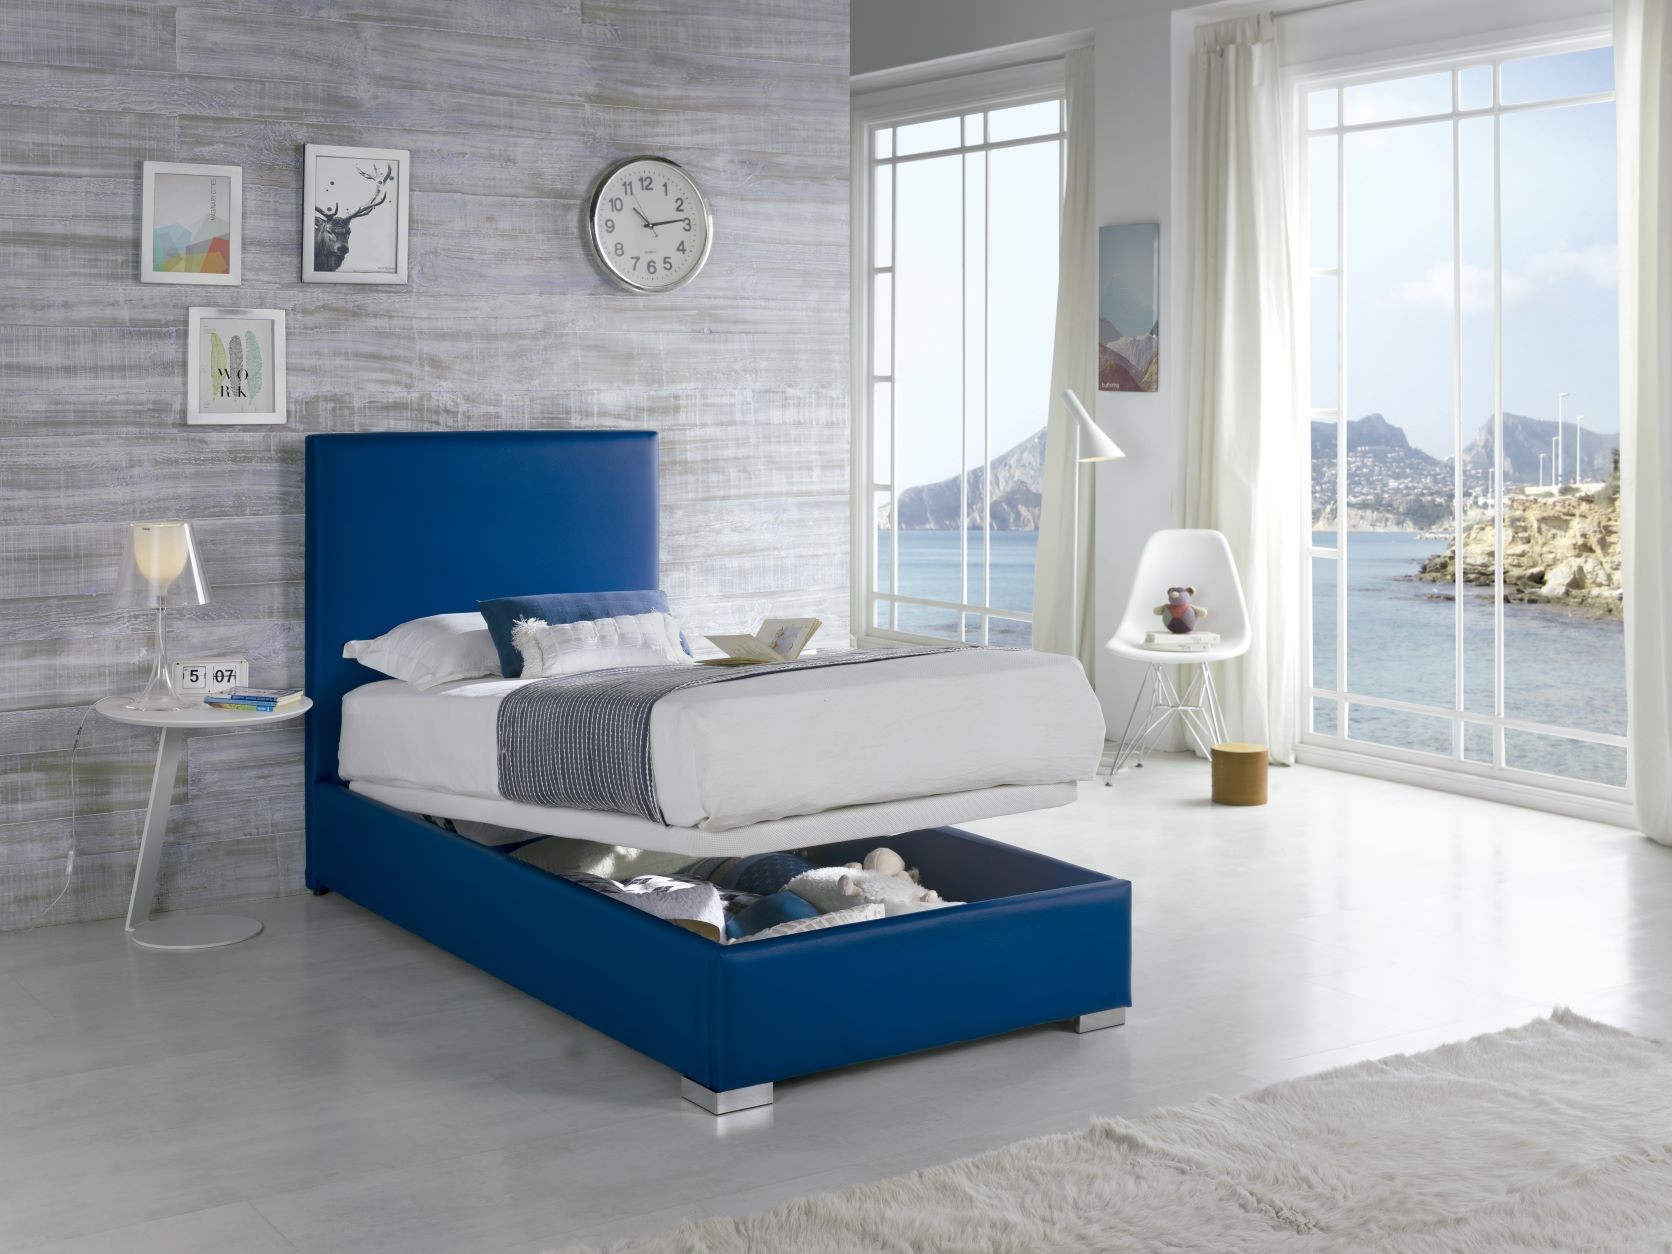 Estila Moderná jednolôžková kožená posteľ Piccolo s úložným priestorom 90-105cm